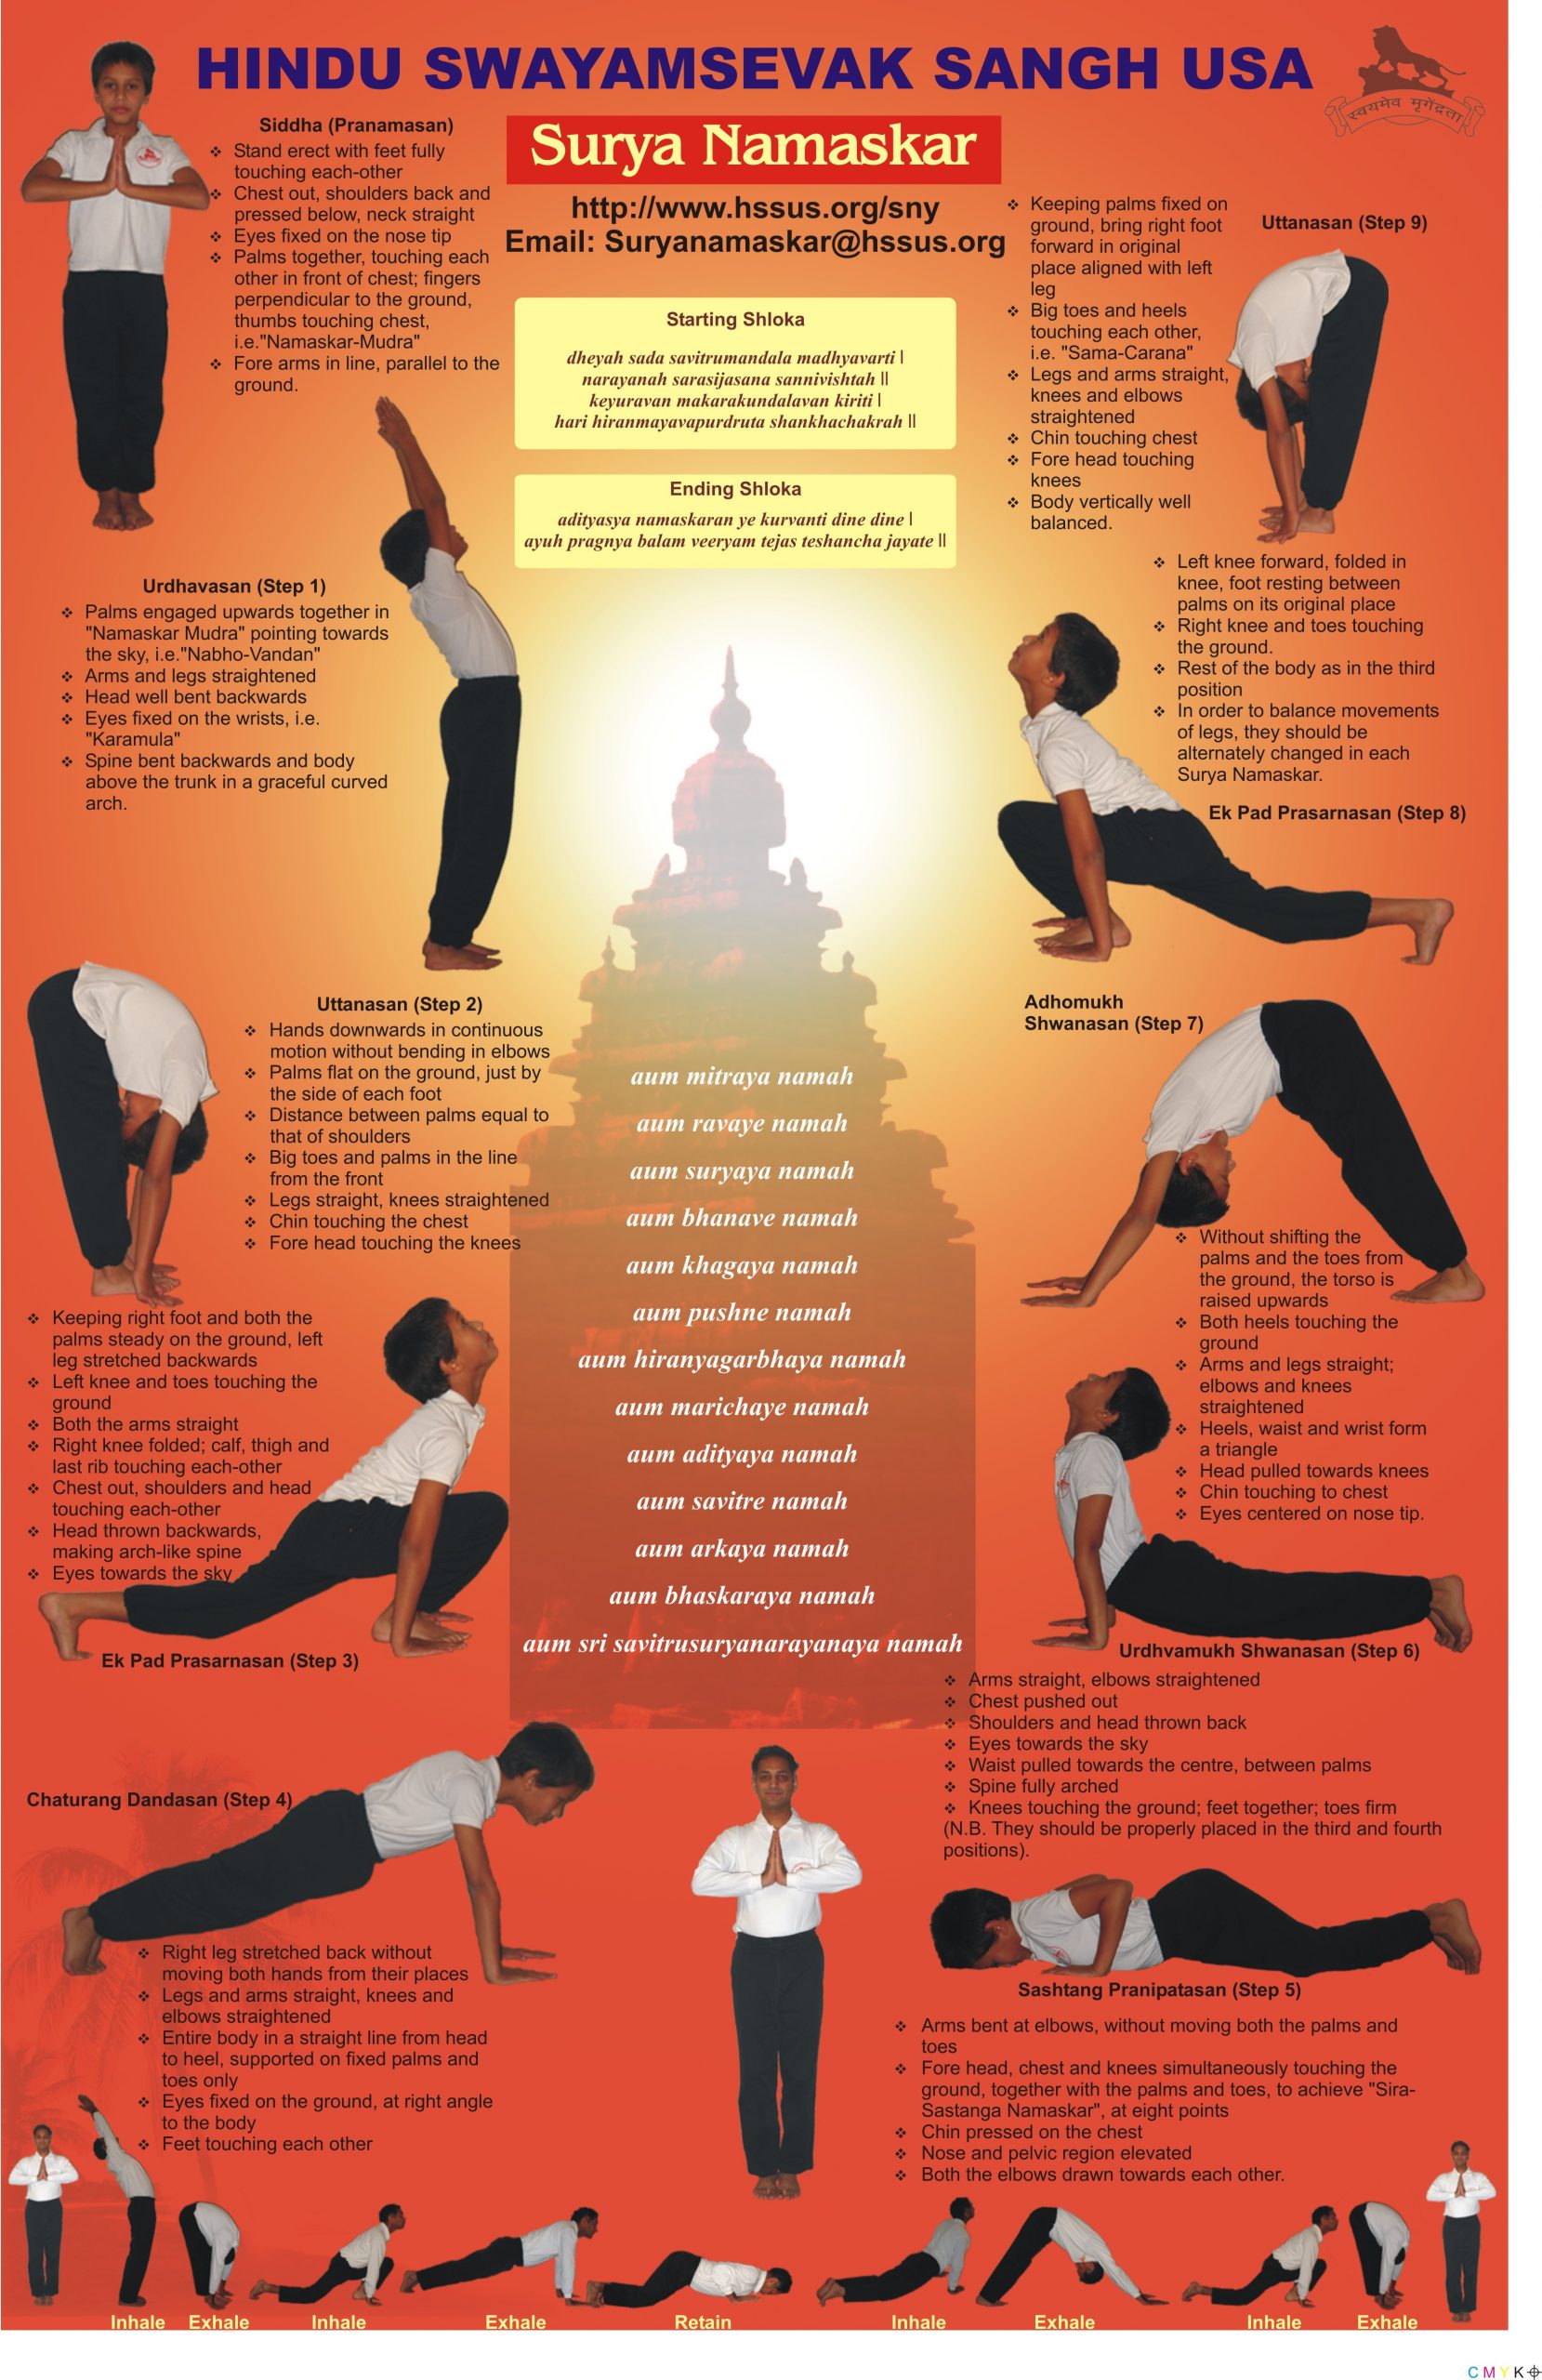 Surya Namaskar/ Sun Salutation 12 Complete Yoga Posture